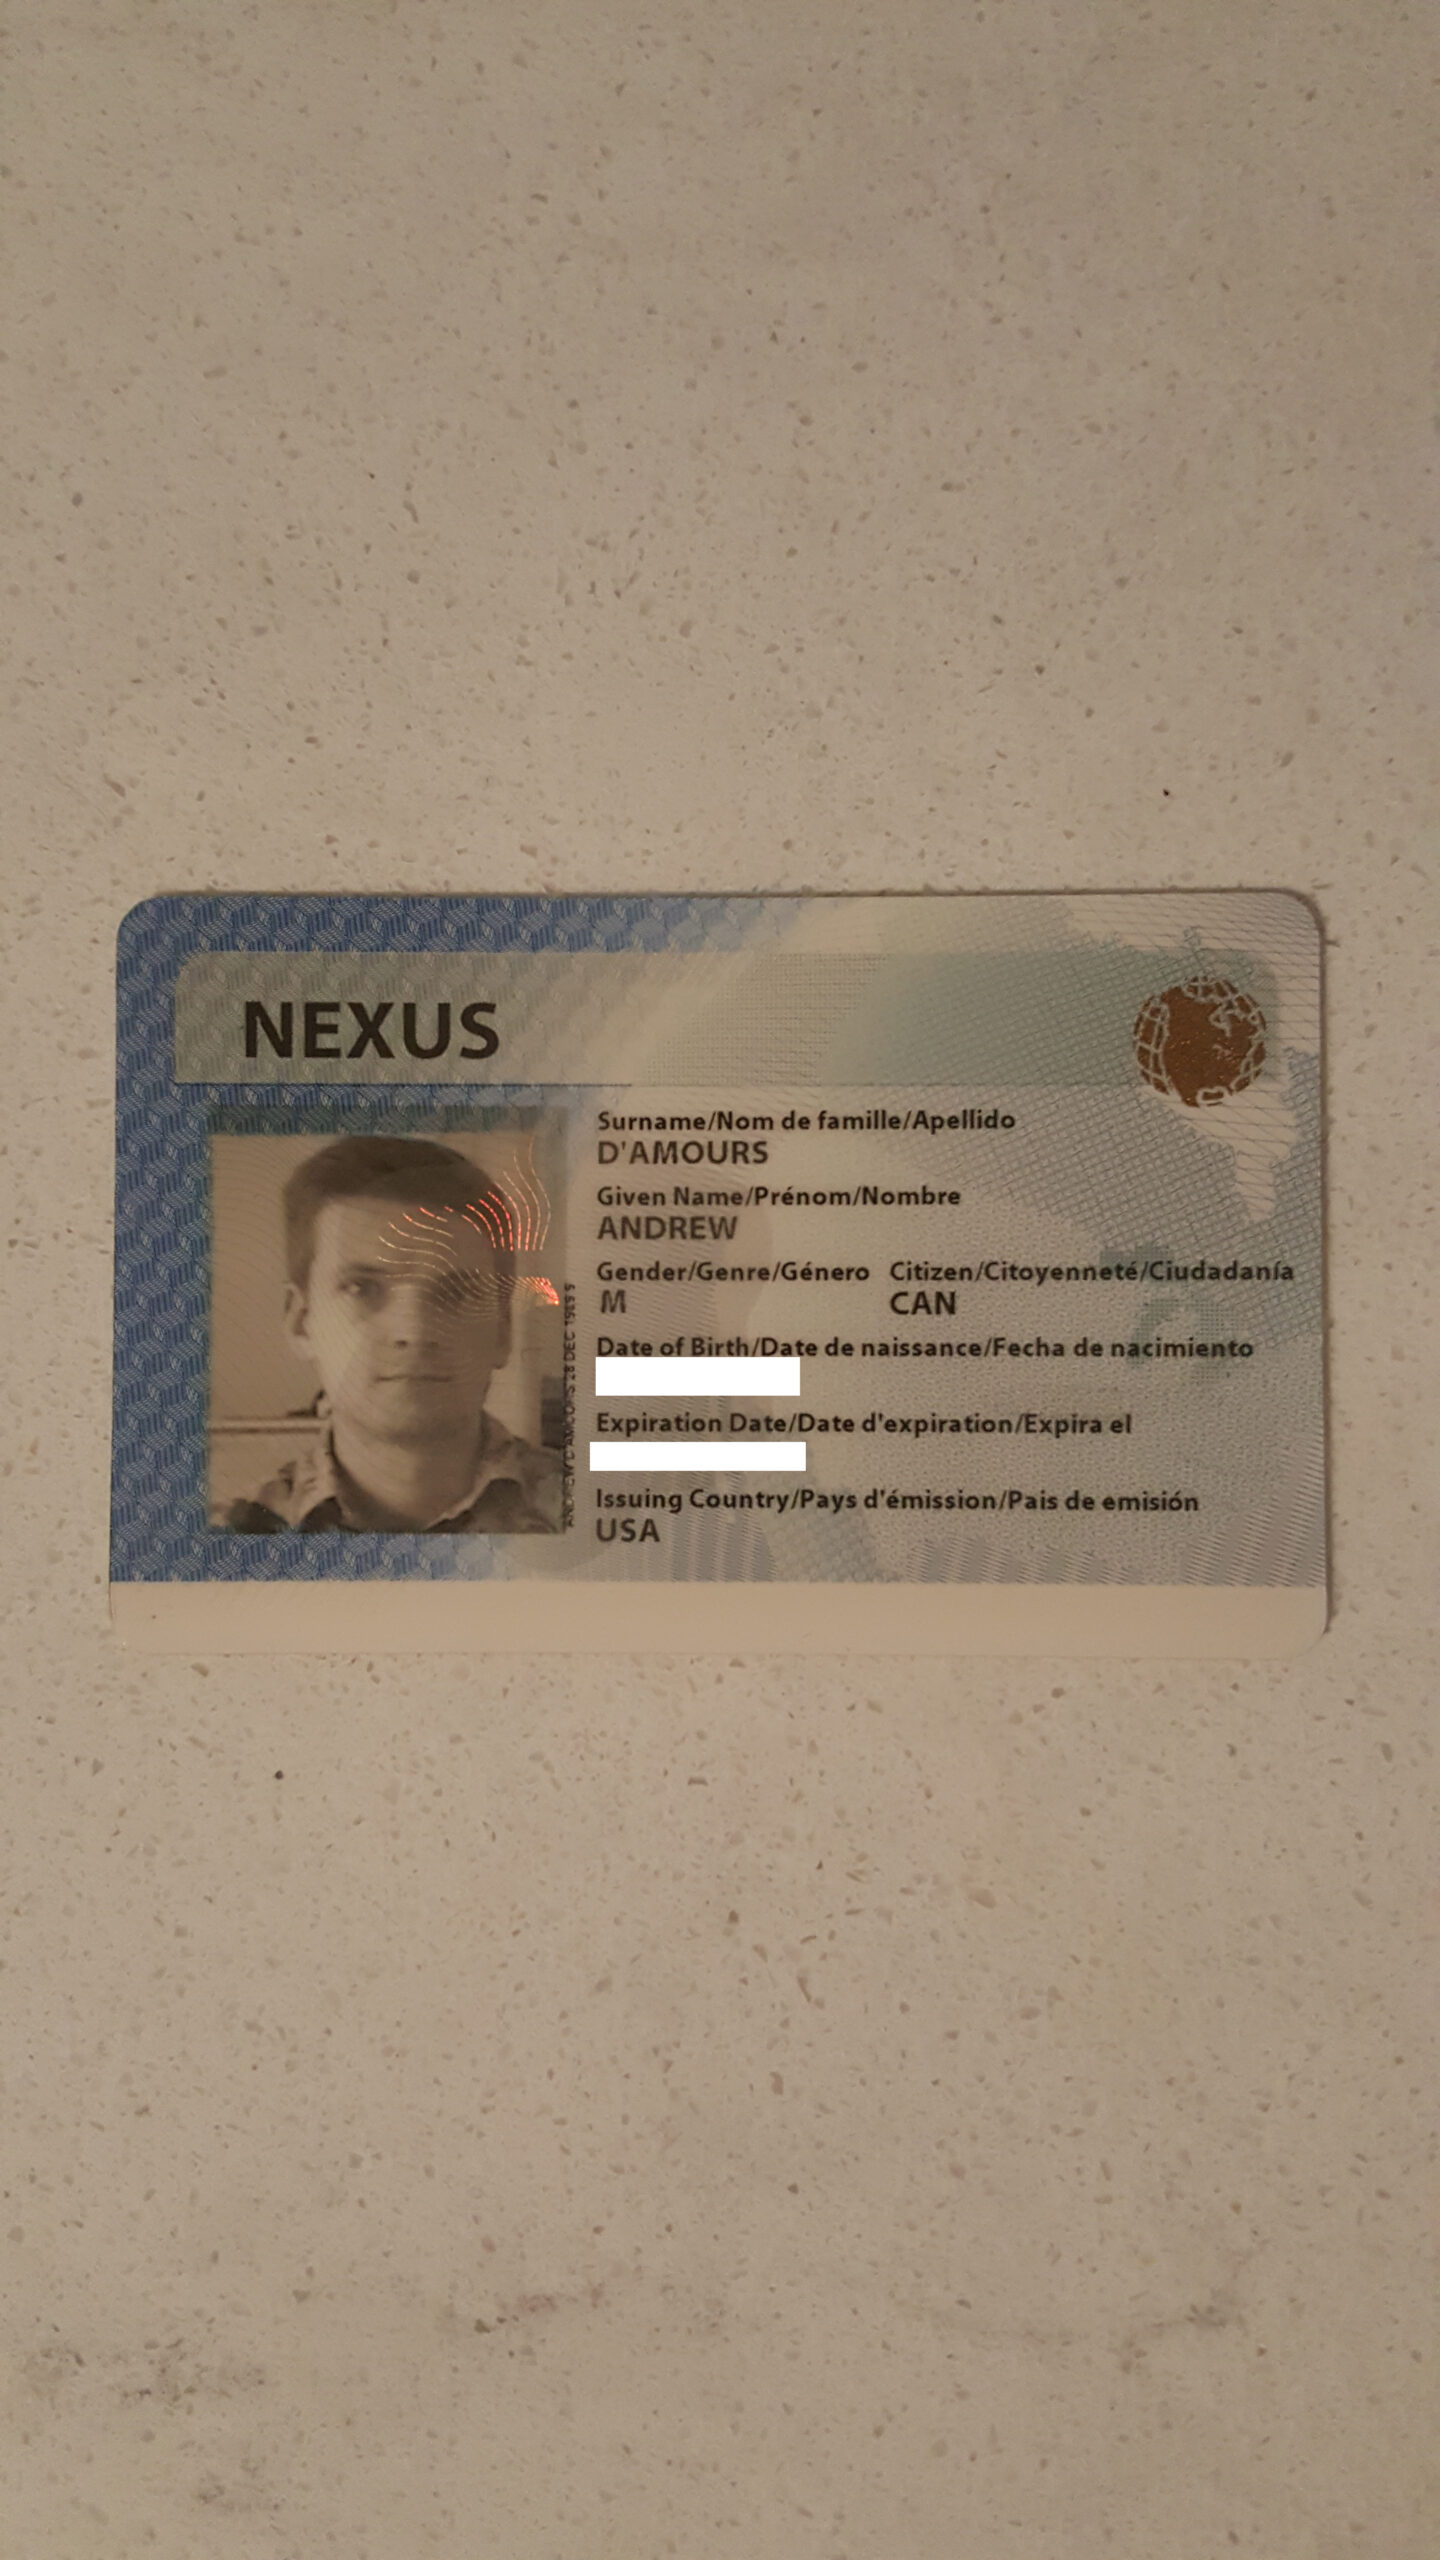 nexus yearly travel pass